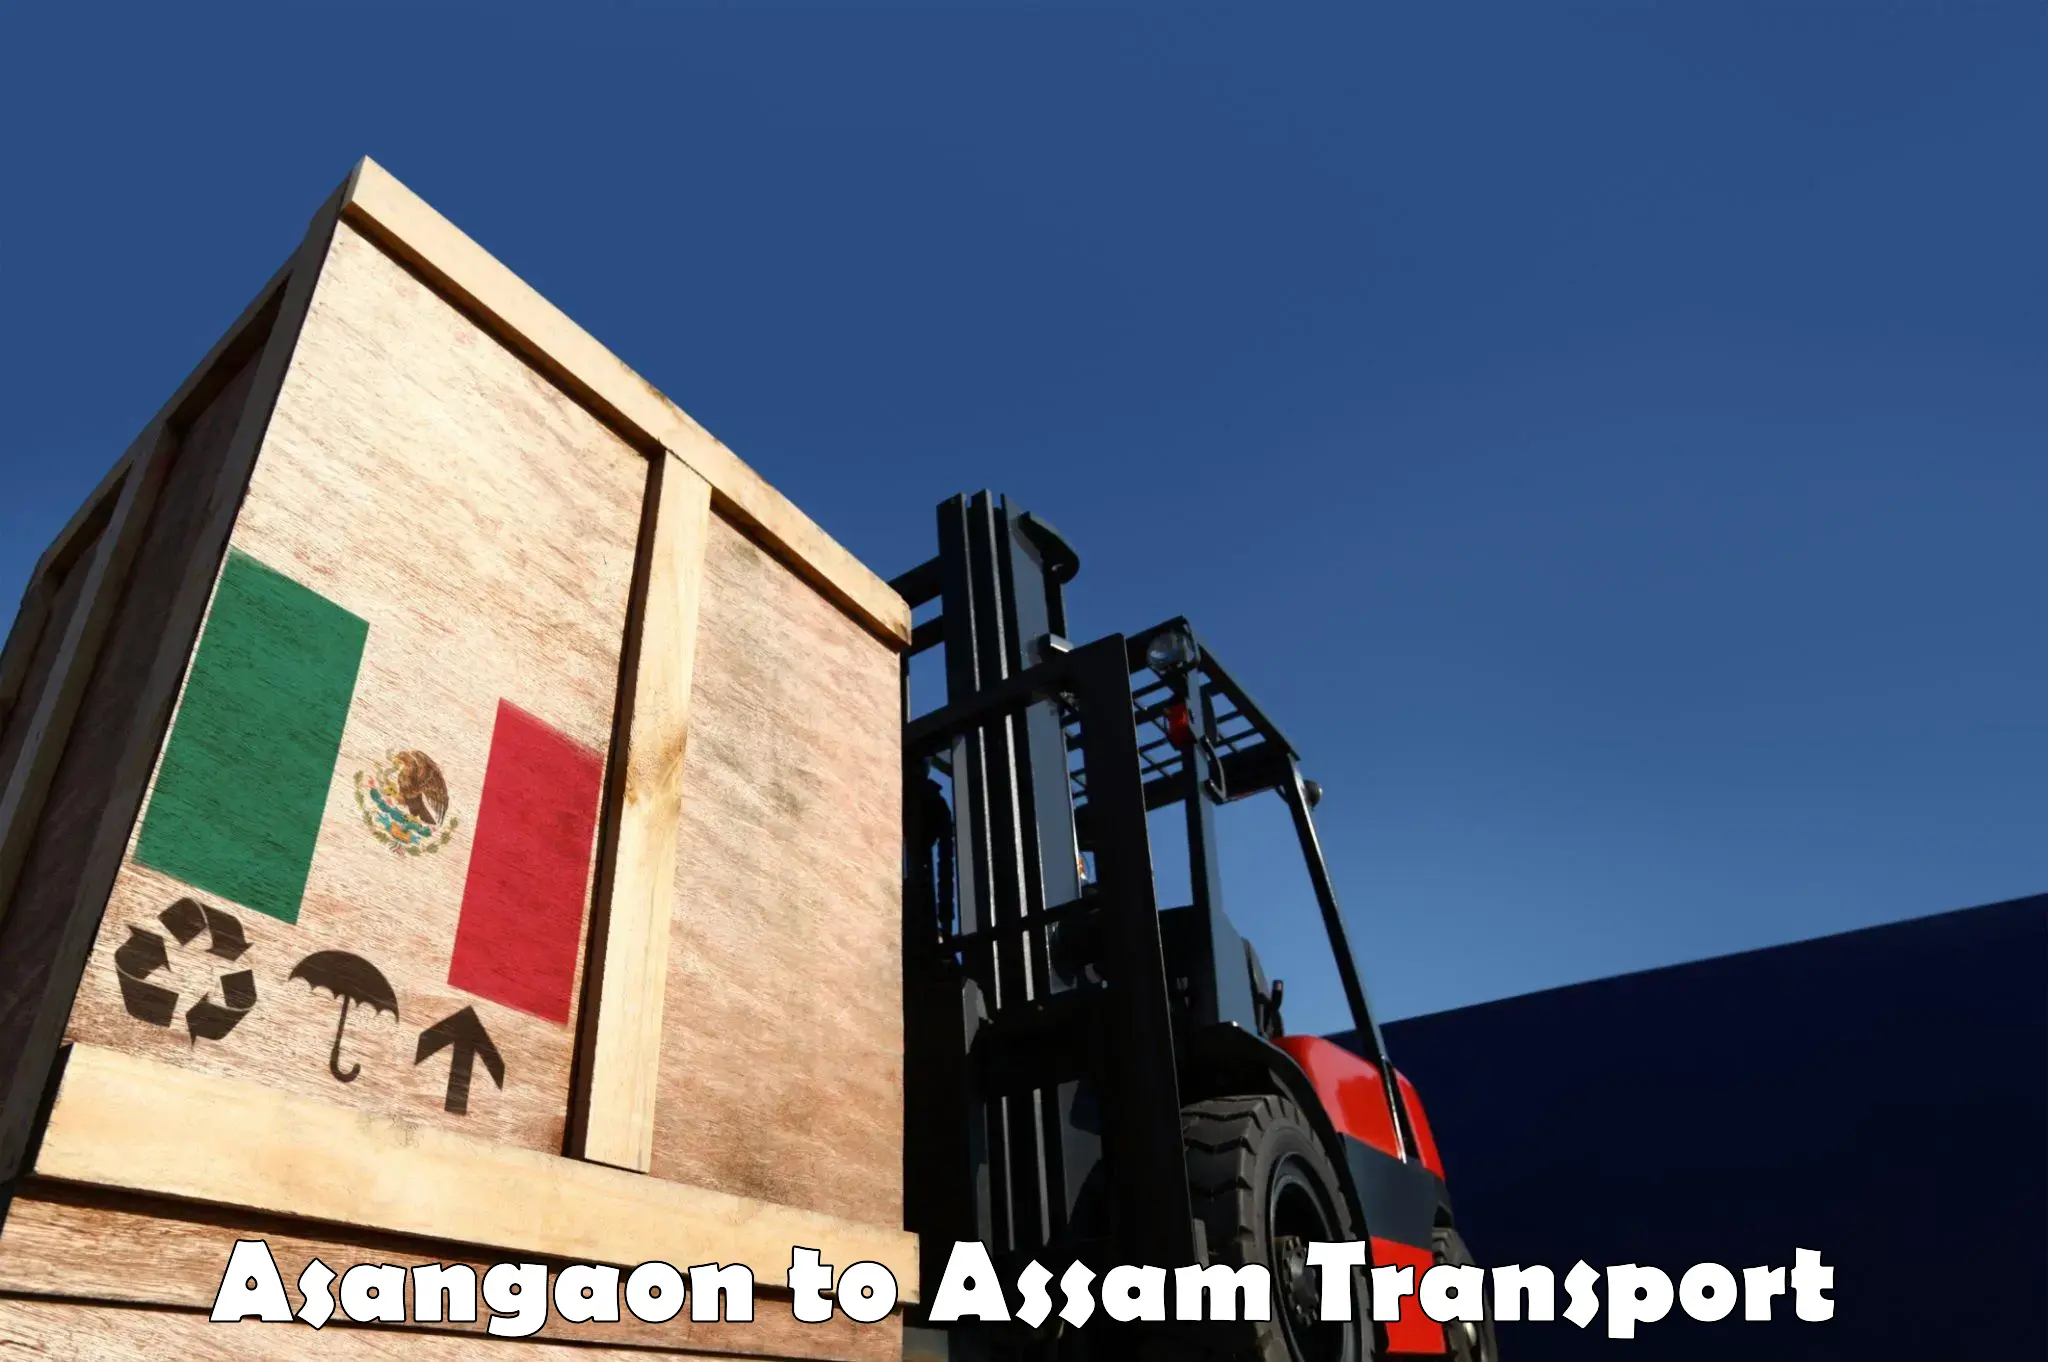 Nearest transport service Asangaon to Dhemaji